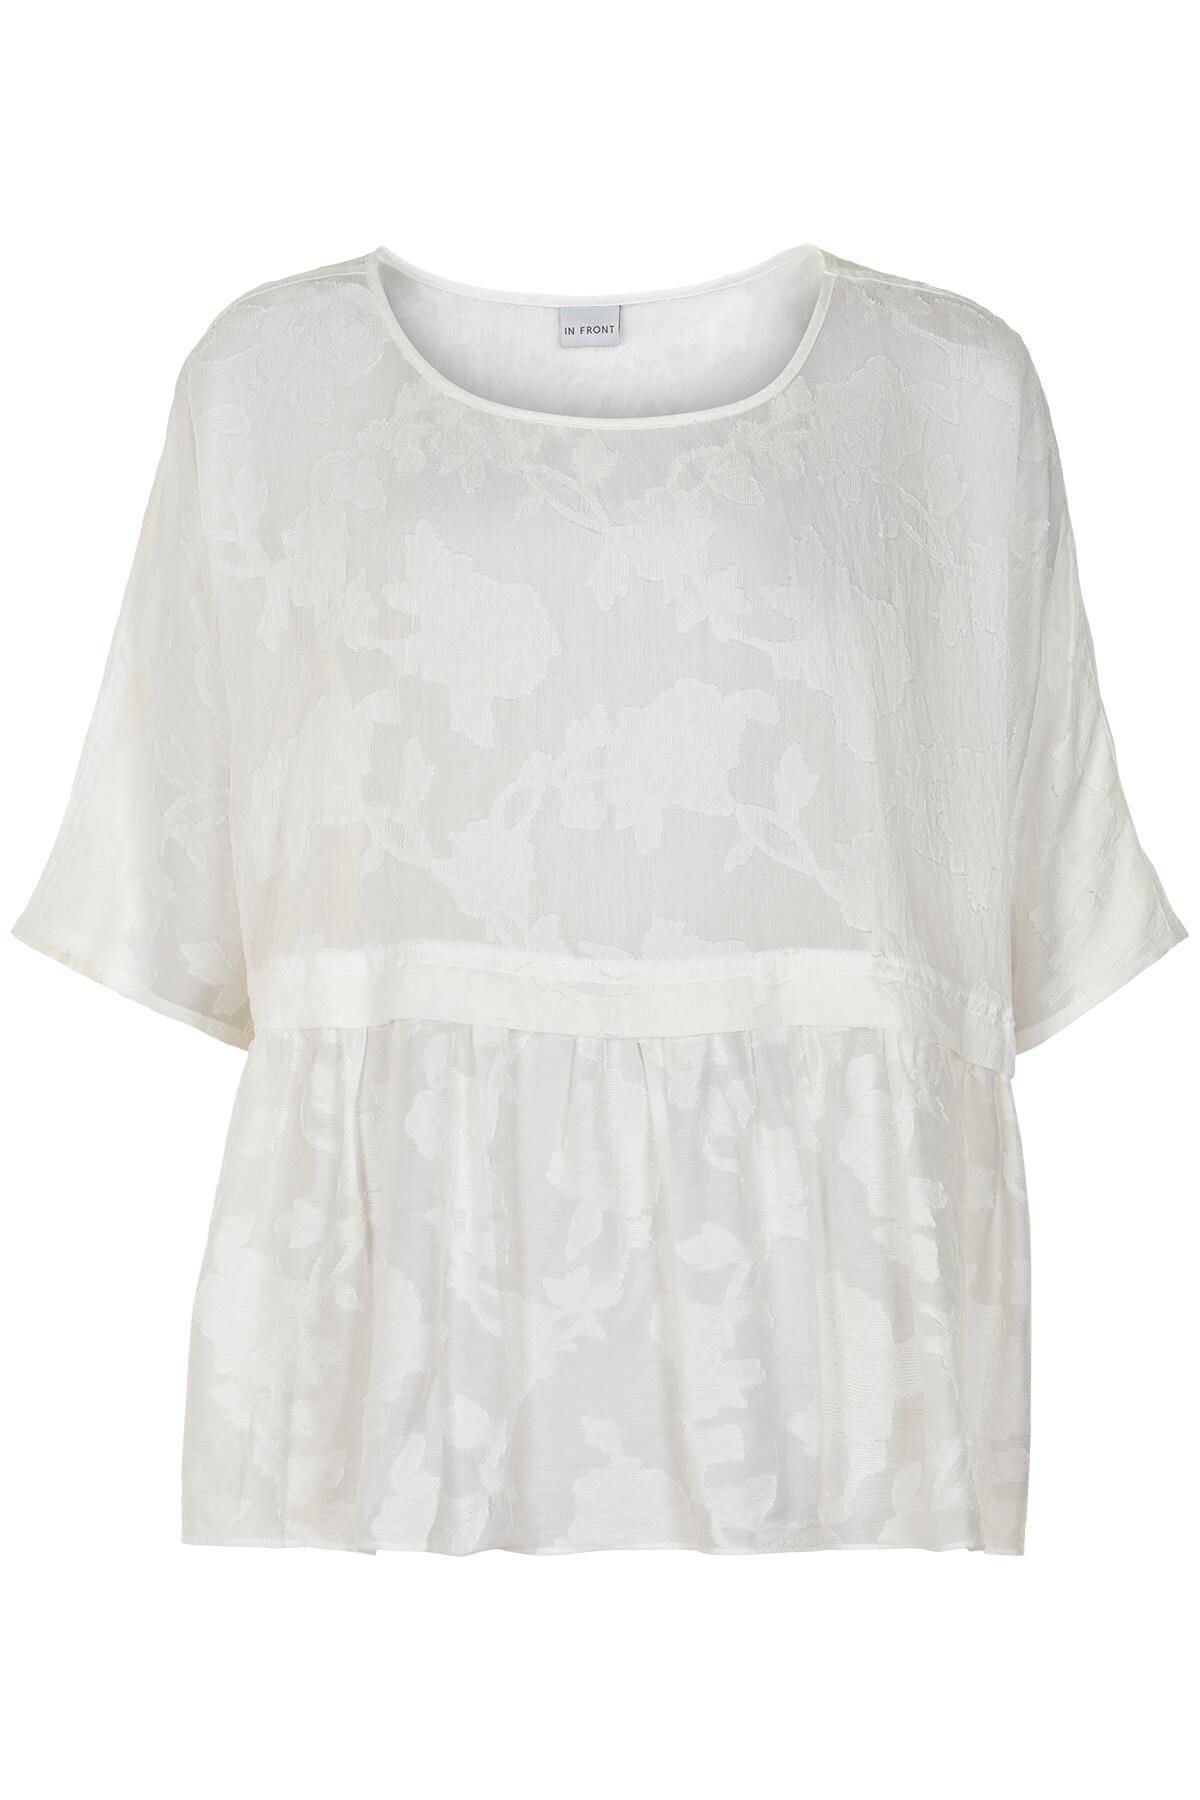 Billede af In Front Fine Bluse, Farve: Hvid, Størrelse: M/L, Dame